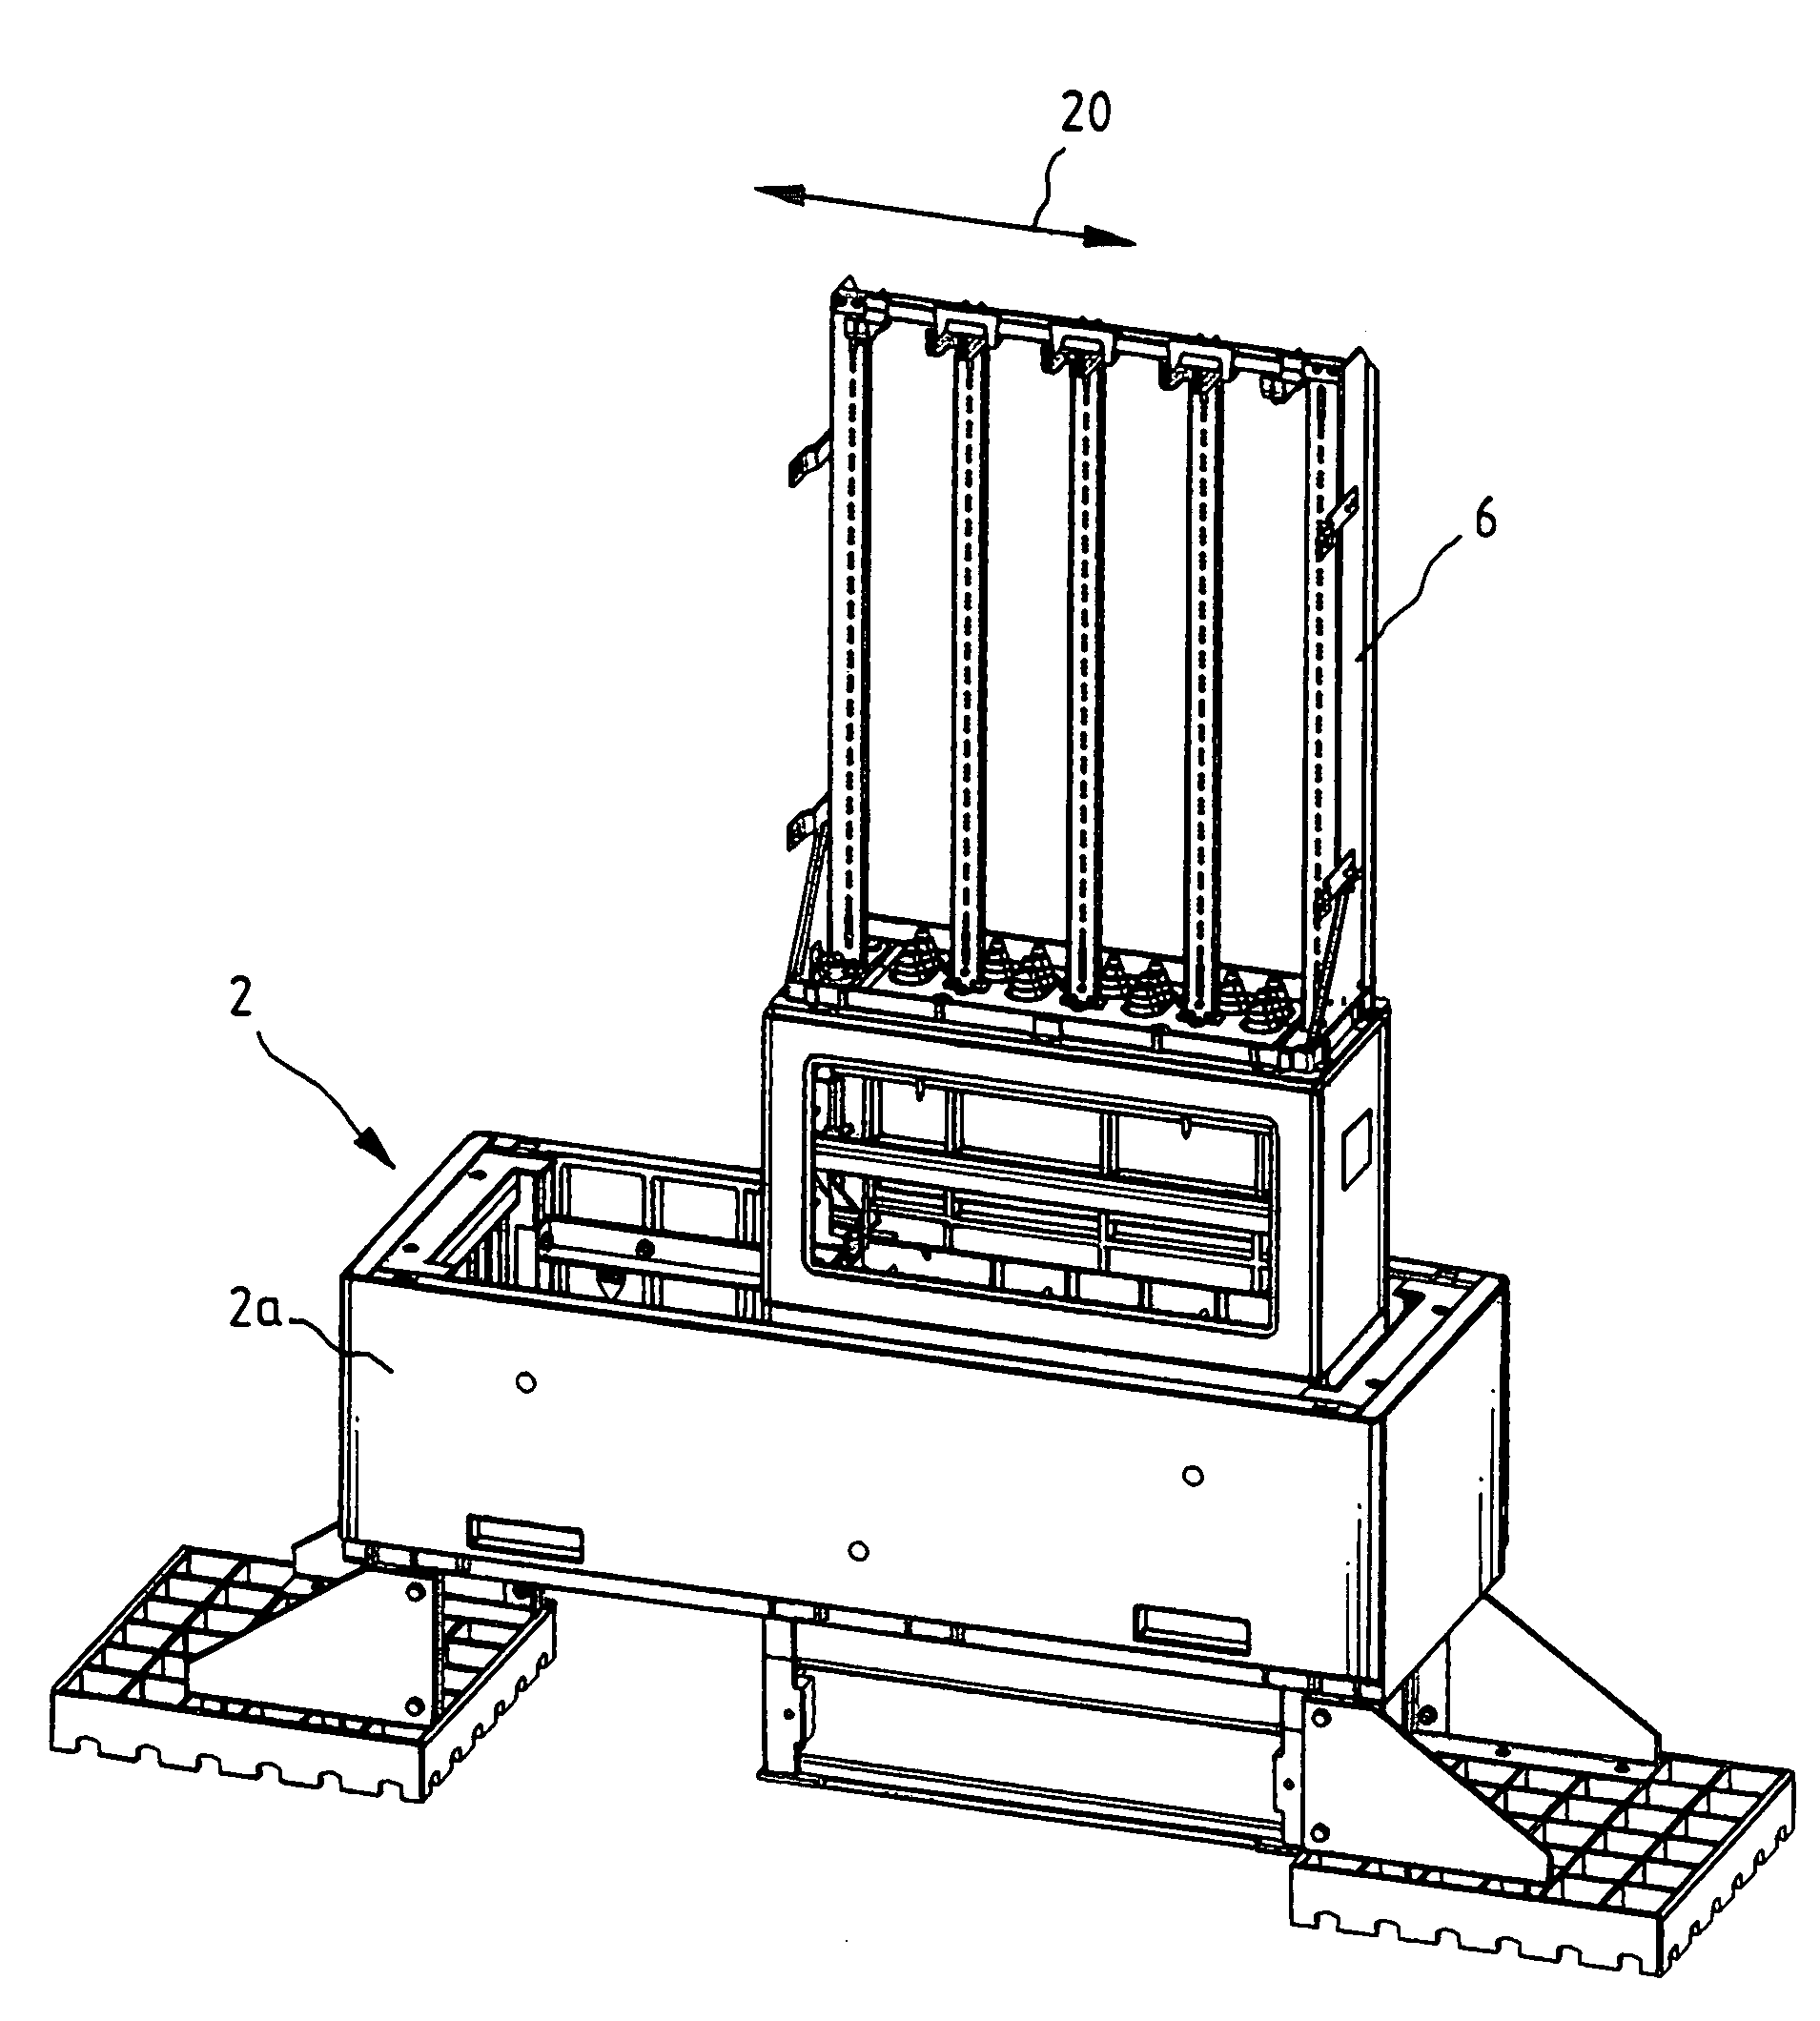 Slip-over distribution cabinet